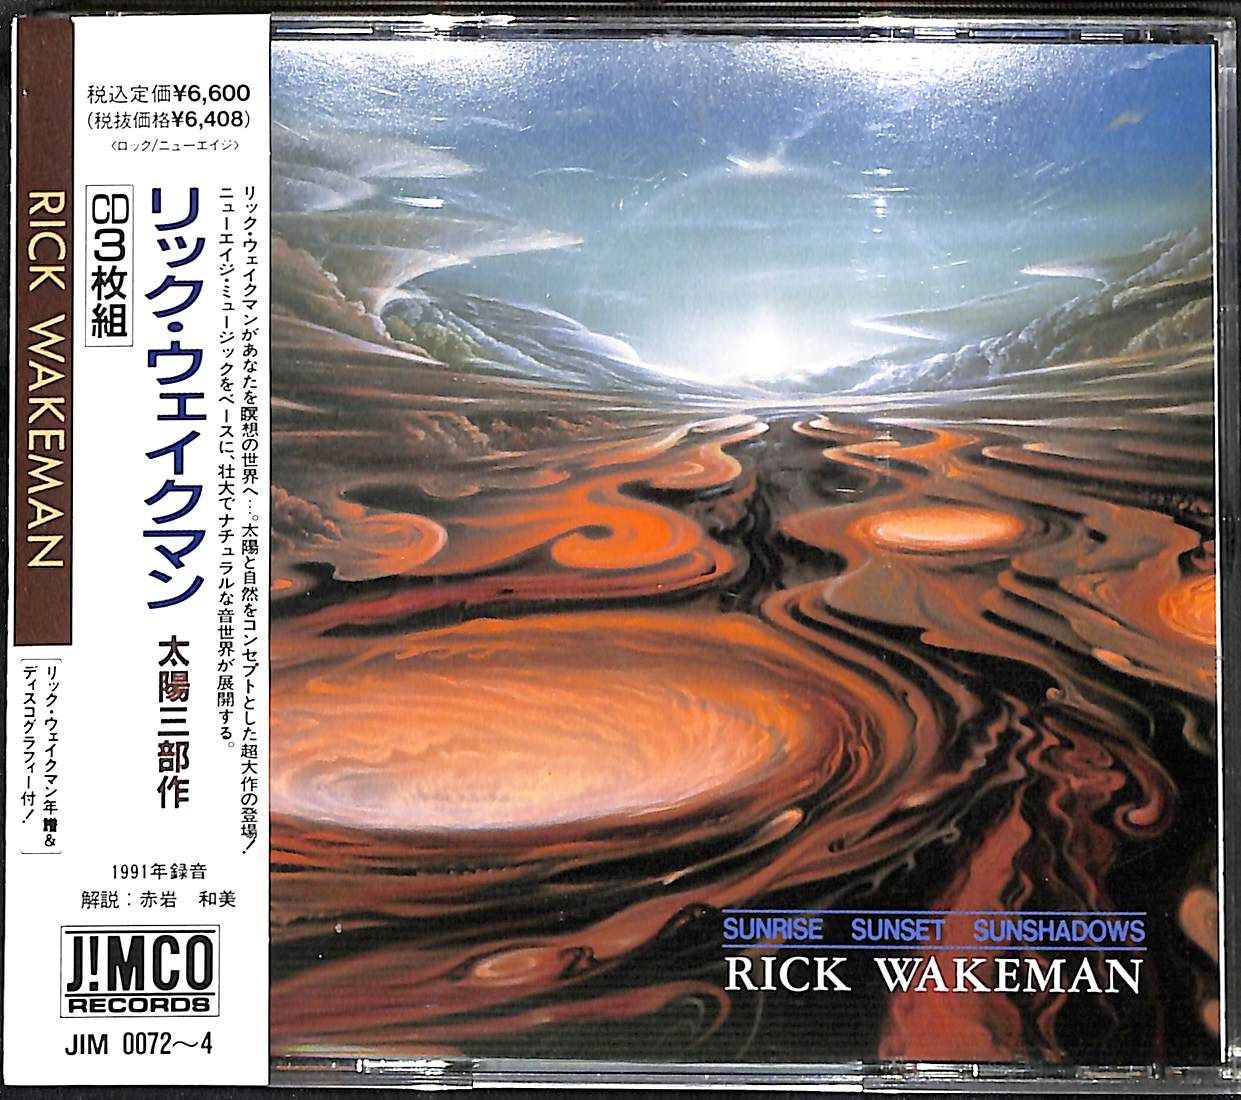 【帯付き3CD】Rick Wakeman Sunrise Sunset Sunshadows リック・ウェイクマン